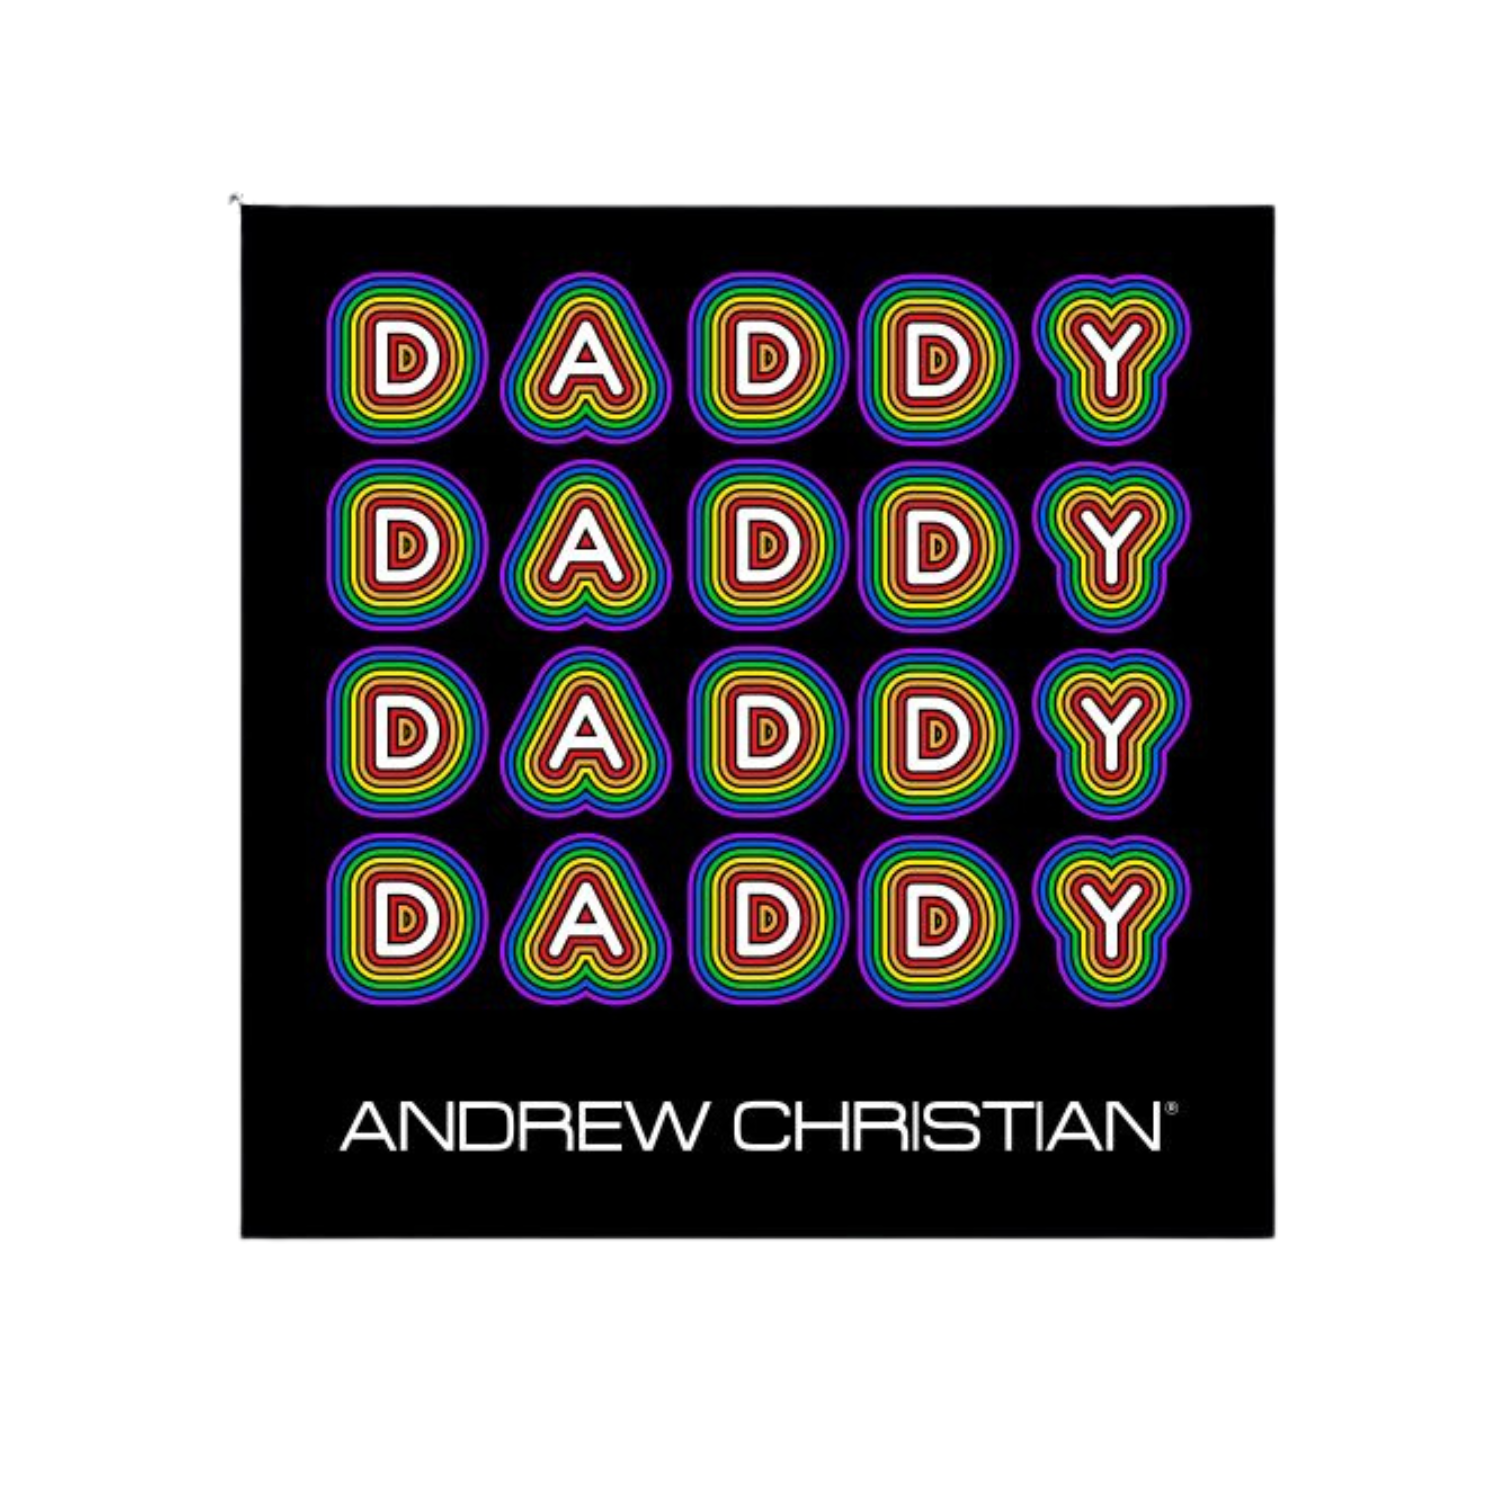 Leuke stickers met gay thema of LGBTQ+ thema, zoals deze leuke stickers ontworpen door Andrew Christian koop je bij Flavourez! Deze "Daddy" sticker is erg uniek! Door deze producten te kopen steun je kleine en grote LGBTQ+ of Gay ondernemingen.